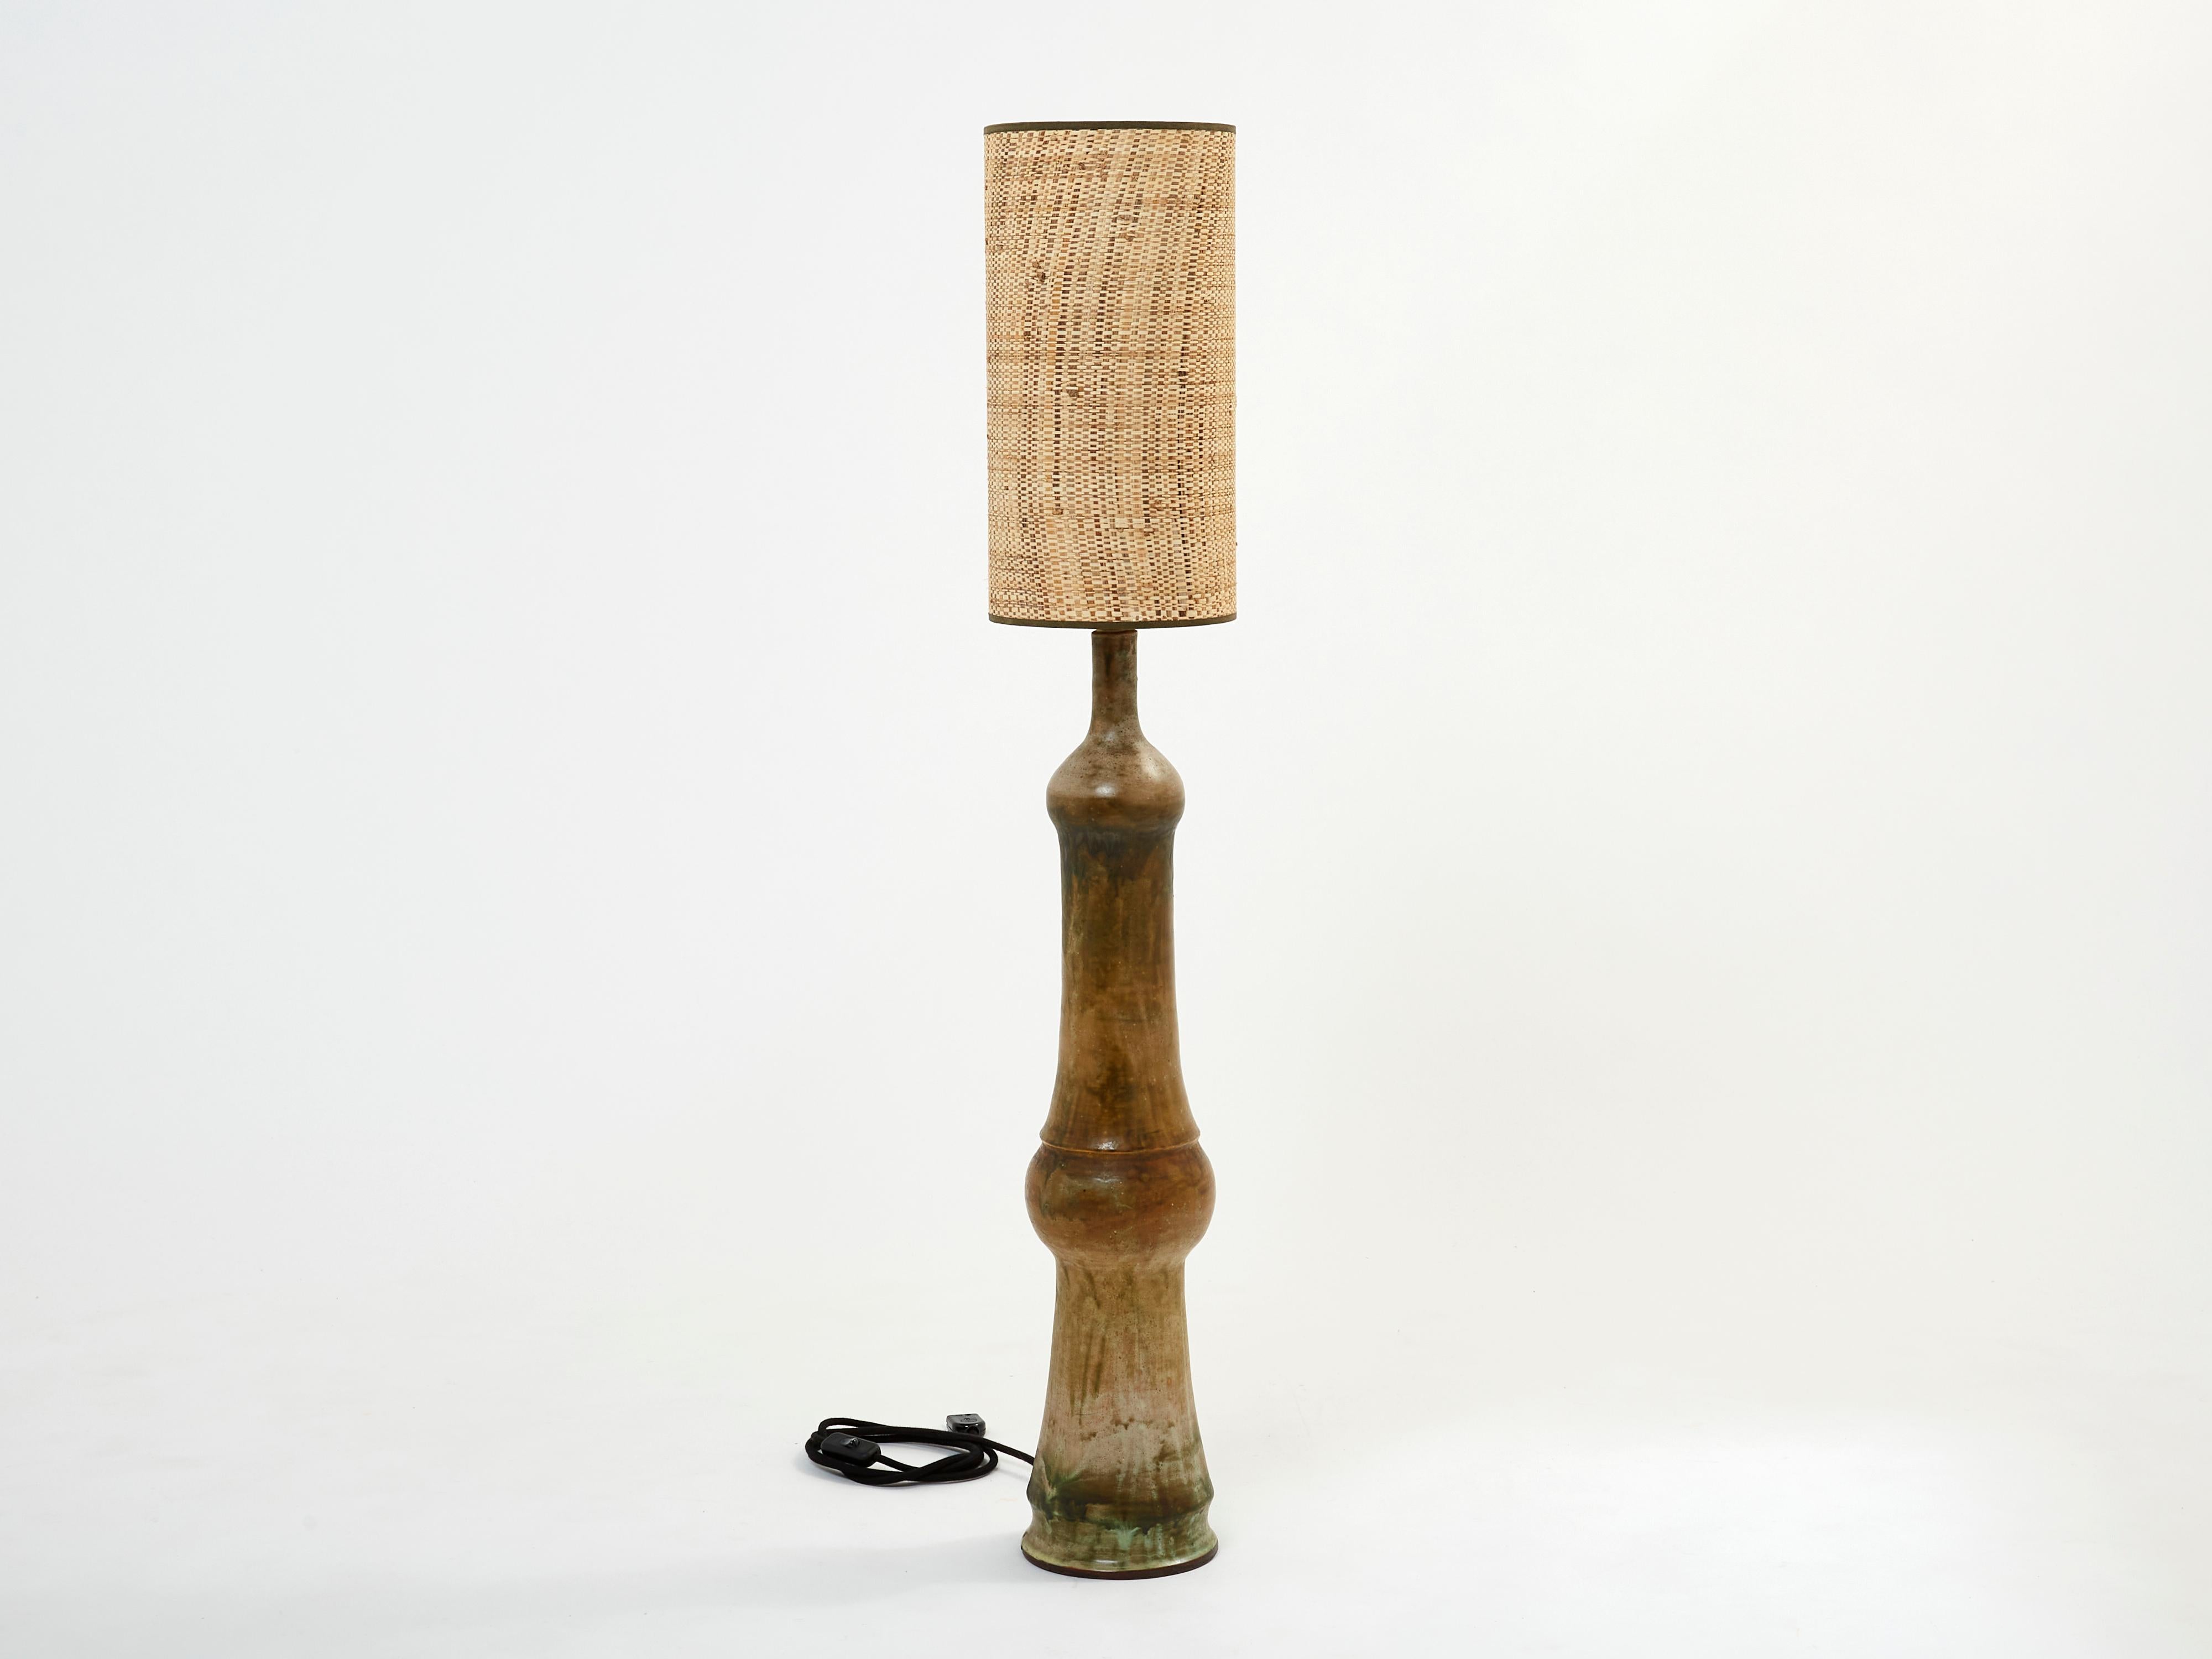 Dies ist eine schöne und hohe Keramik-Lampe signiert P. Dies ist eine frühe 1960er Jahre Arbeit mit schönen Kontrast und Präsenz. In Kombination mit einem schönen Rattanschirm mit braunen Bändern für einen schönen Vintage-Look spendet diese